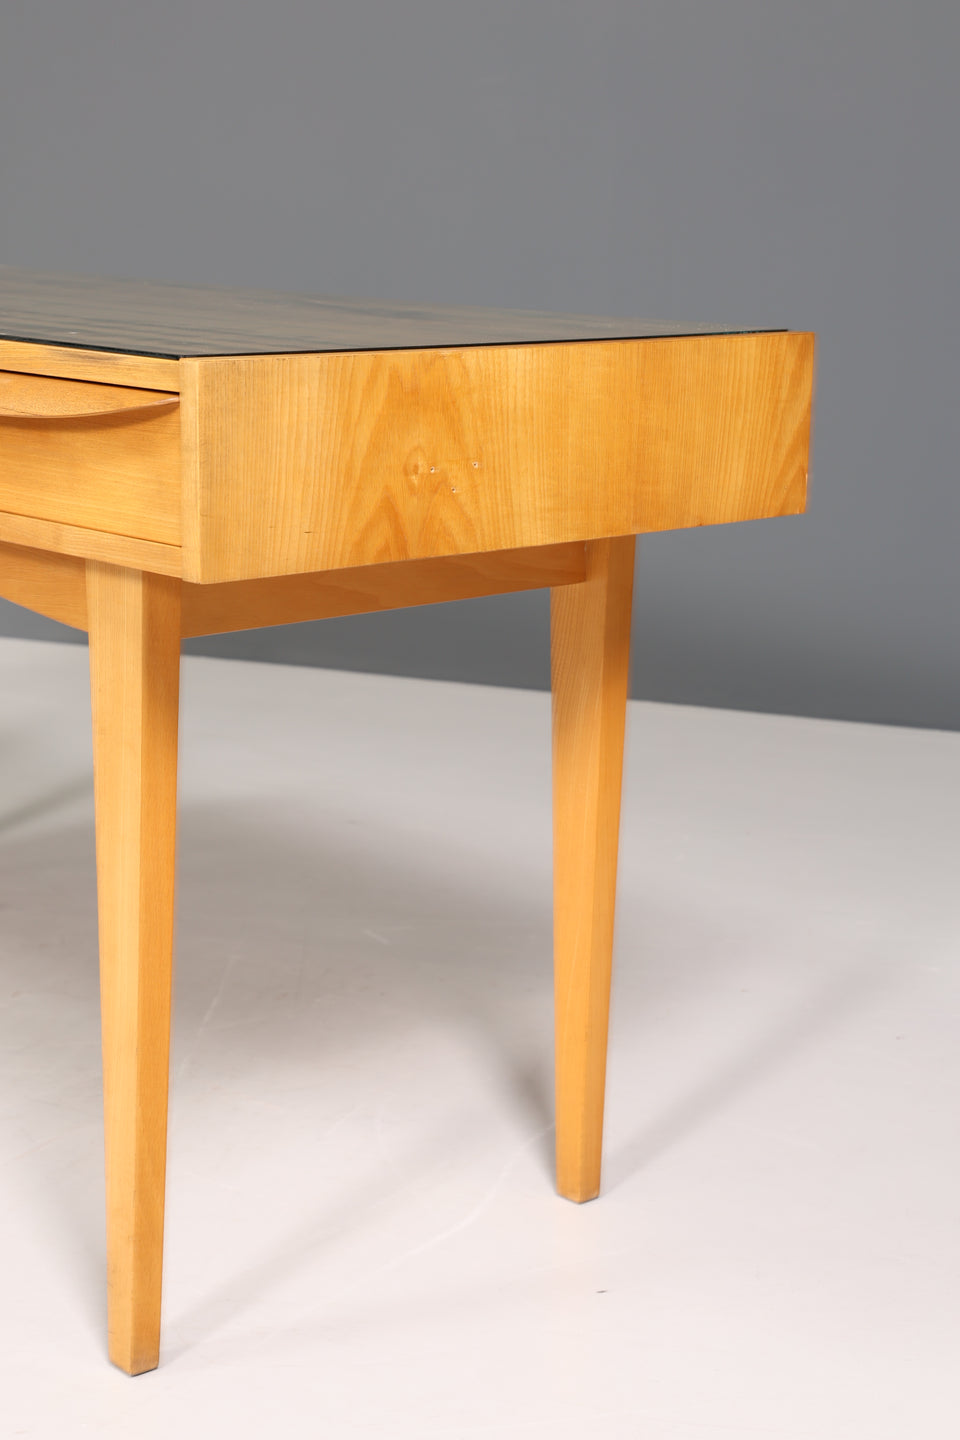 Hellerau Schreibtisch Modell 602 Mid Century Franz Ehrlich Design Bürotisch Vintage Desk